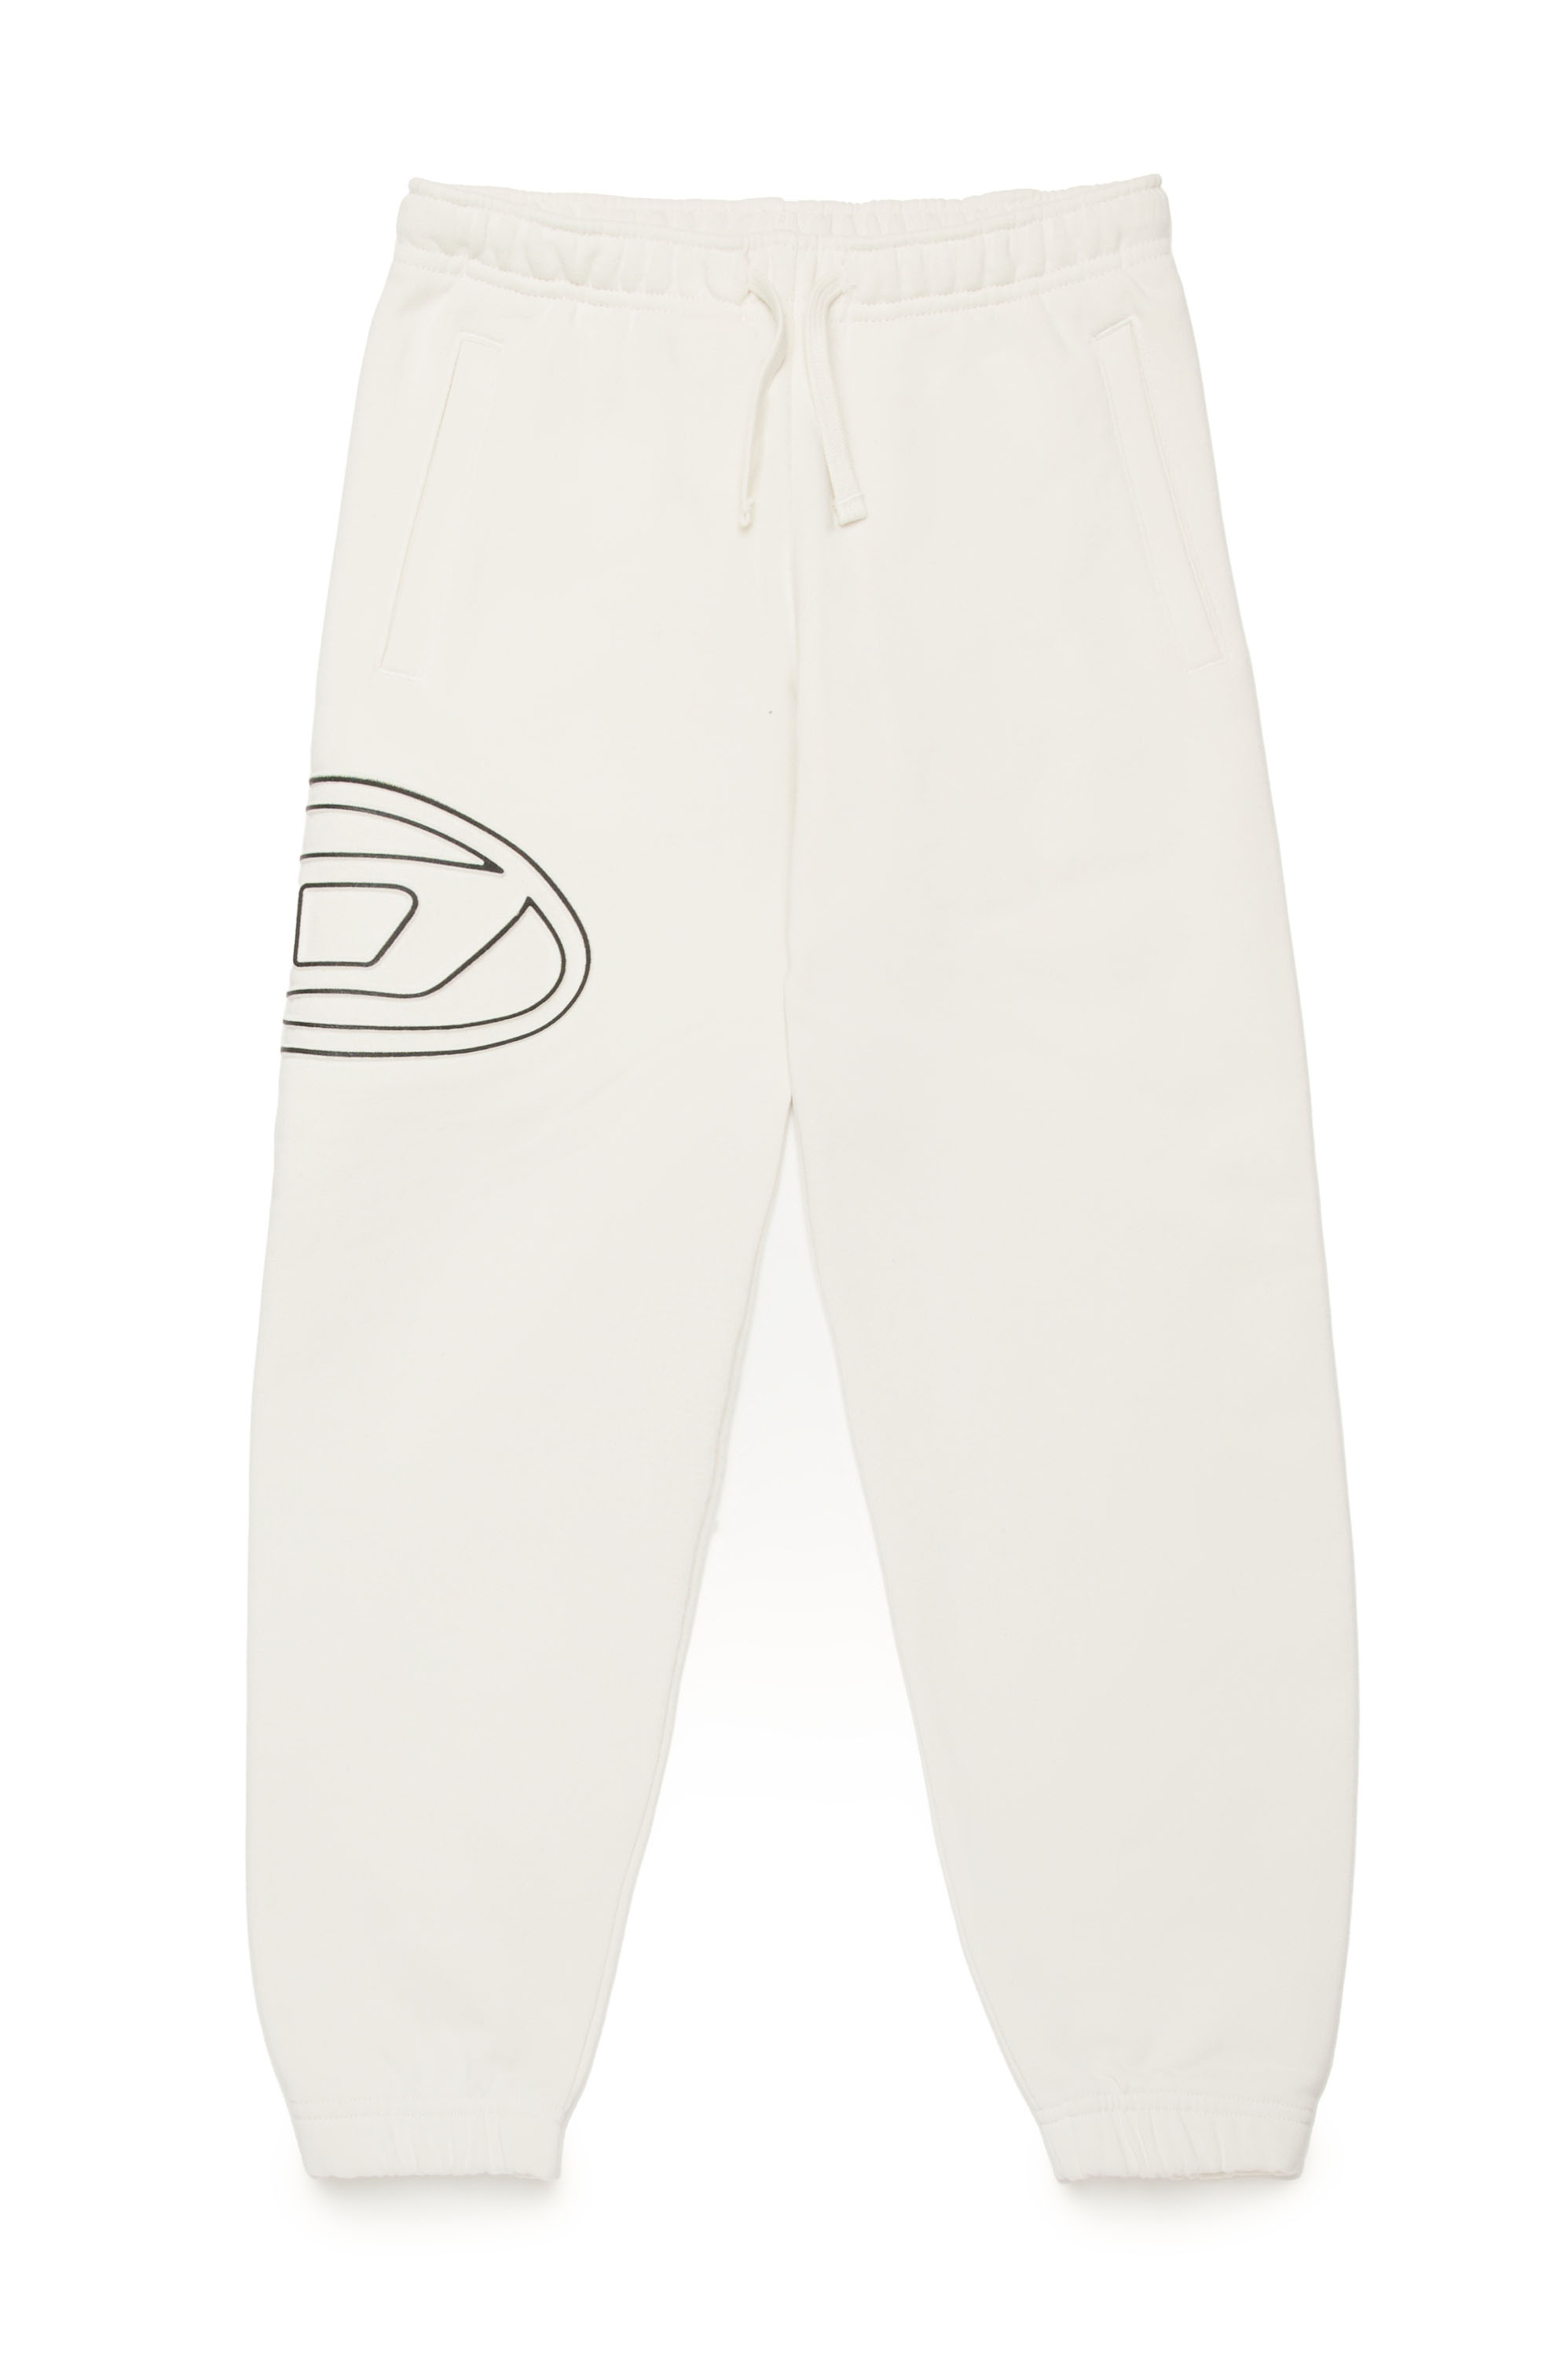 Diesel - PMARKIBIGOVAL, Homme Pantalon de survêtement avec logo Oval D embossé in Blanc - Image 1